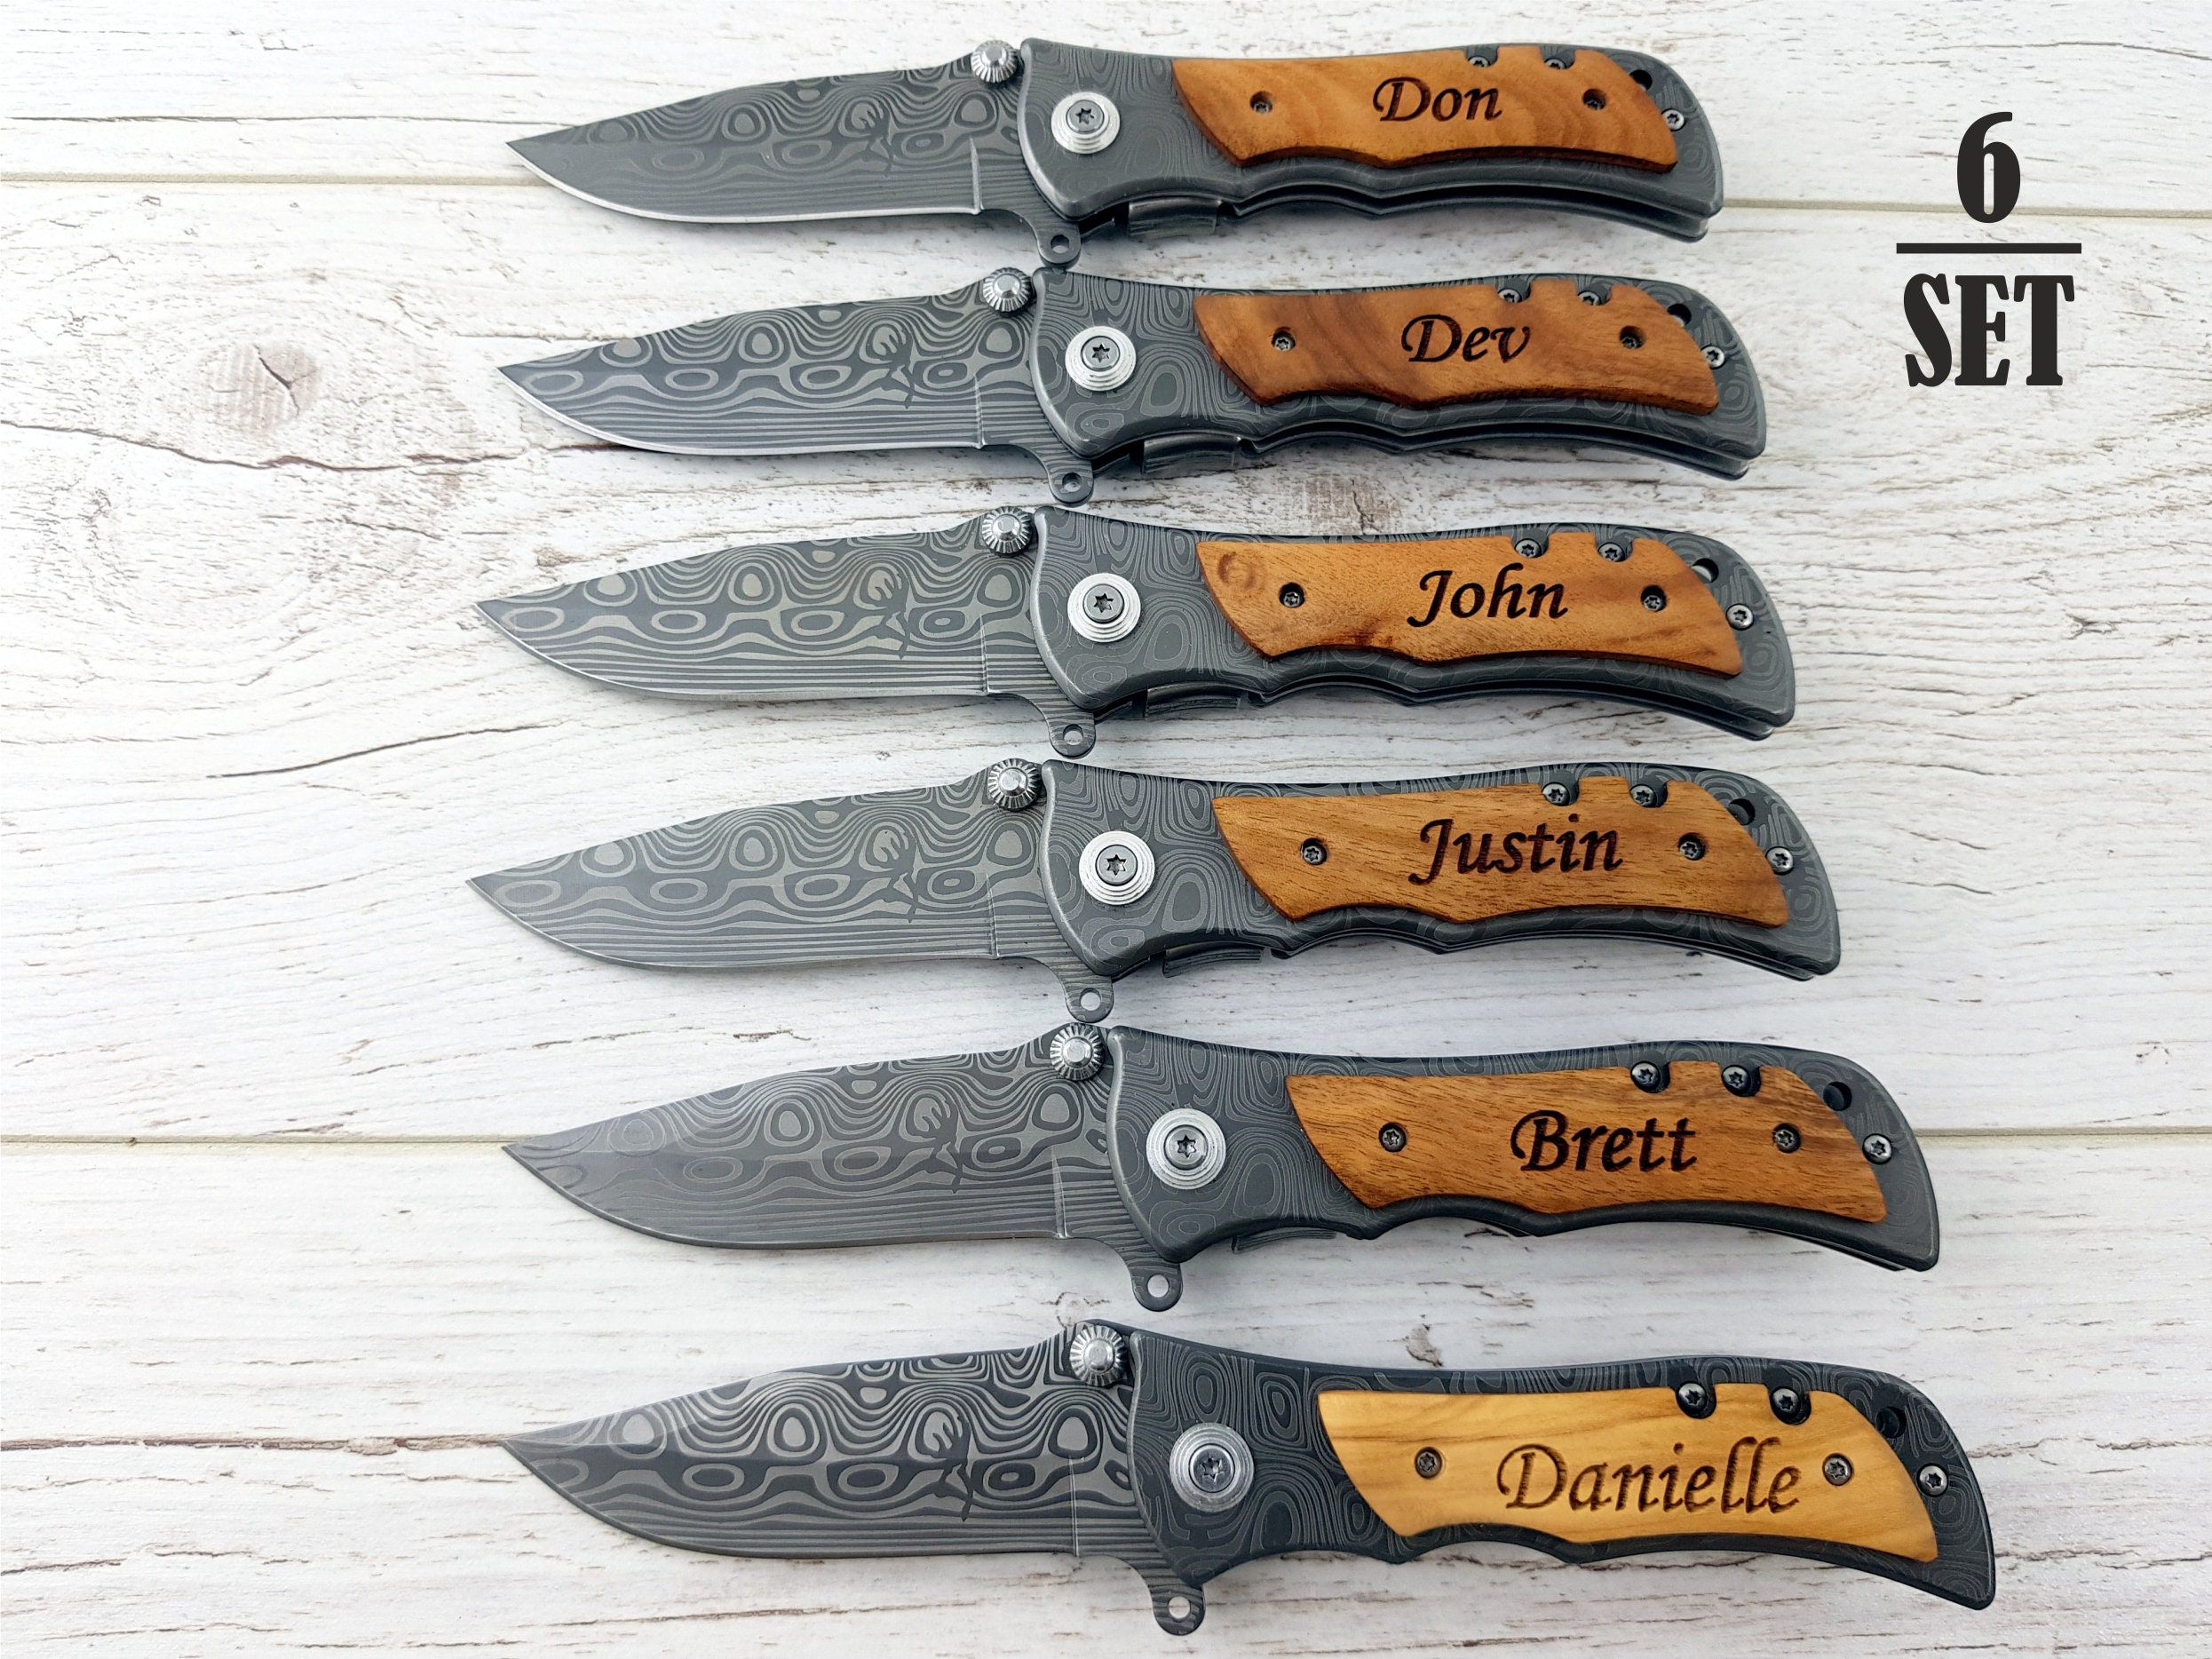 RK-372 Damascus Pocket knife for Men, Groomsmen